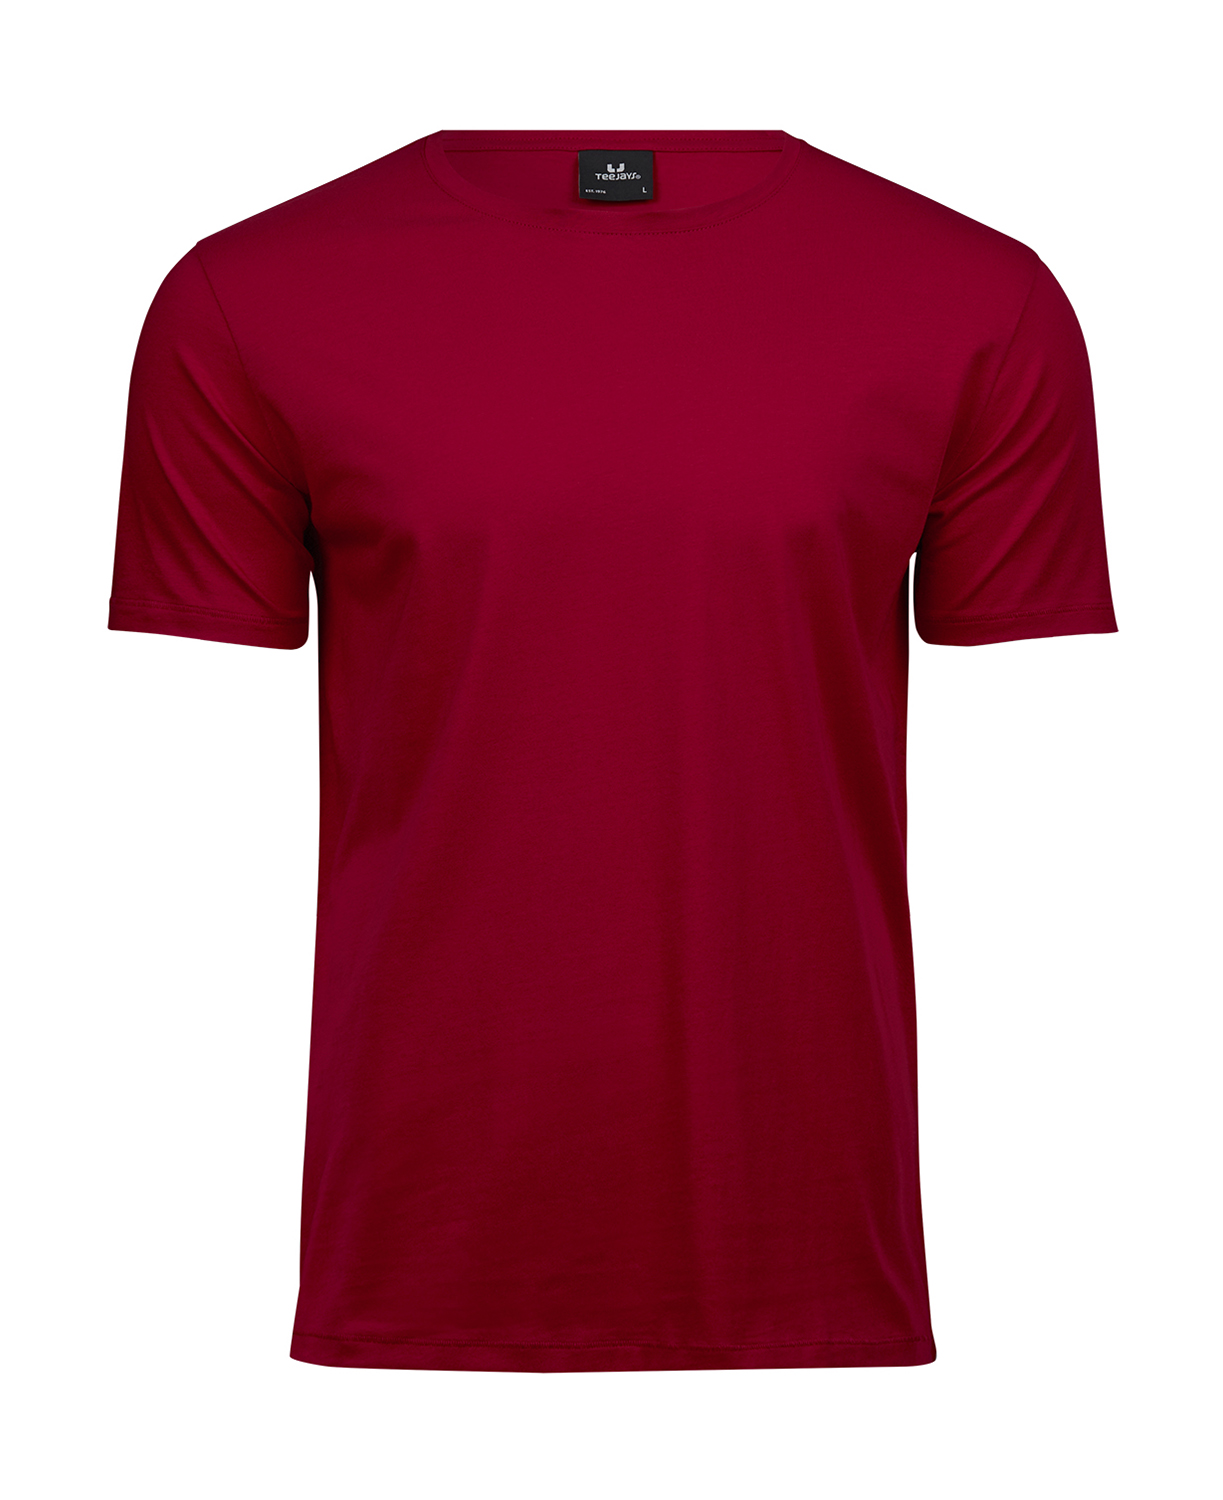 Pánské tričko Luxury Tee Velikost: S, Barva: Červená